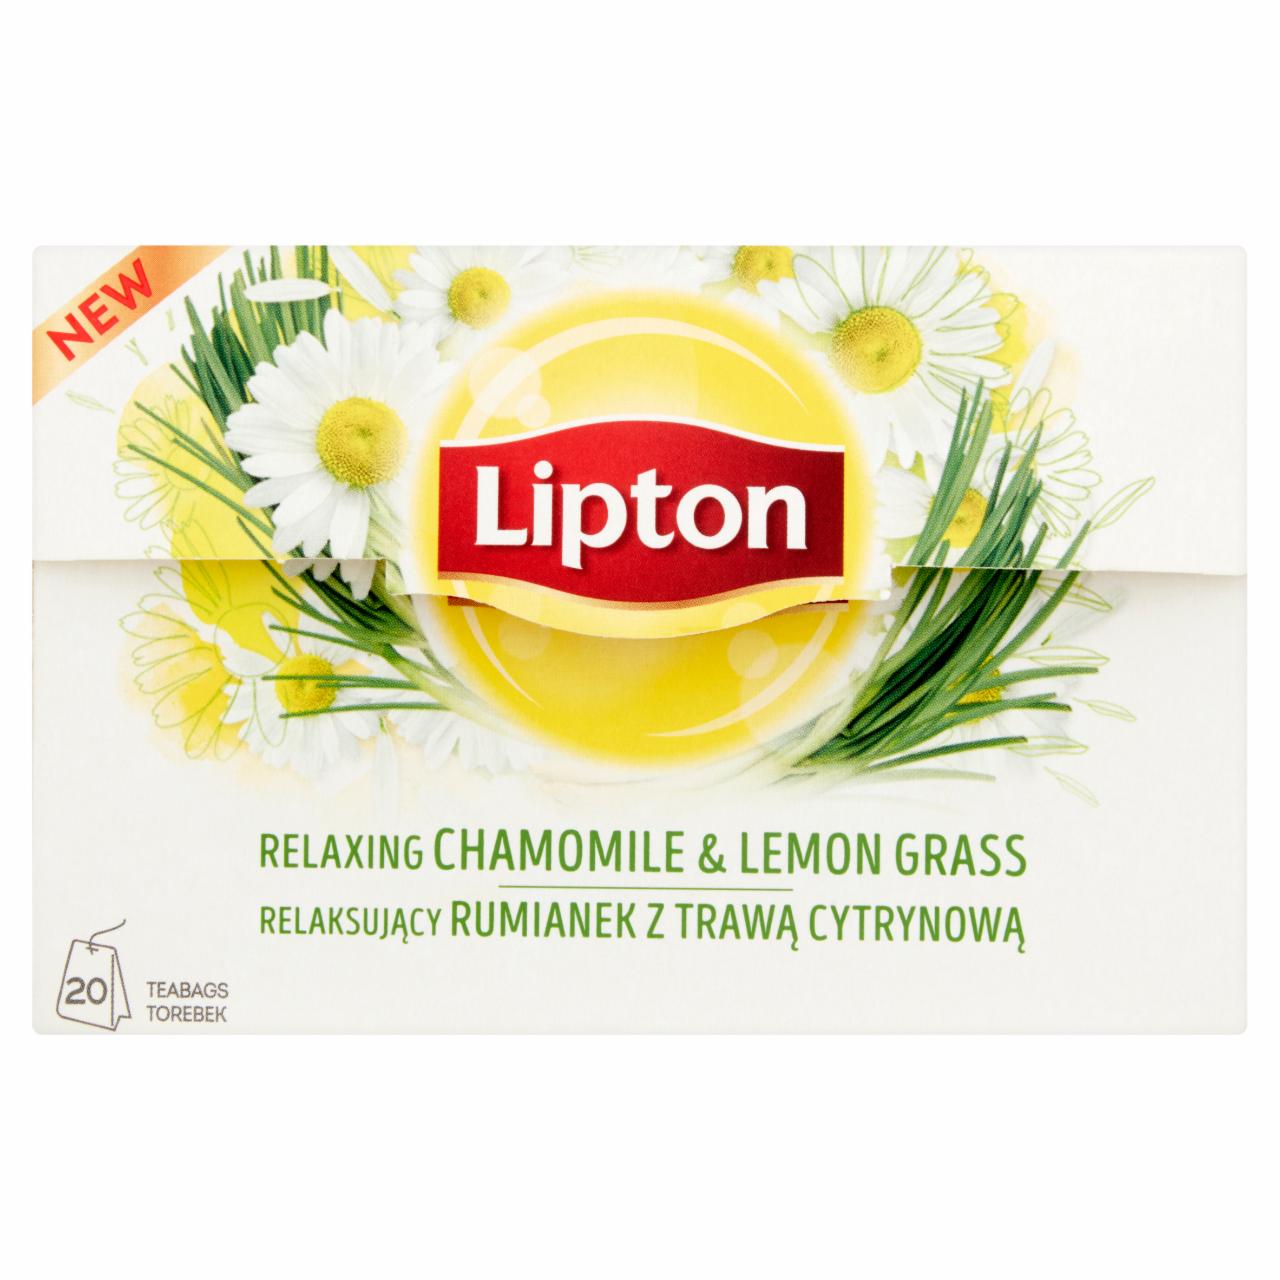 Zdjęcia - Lipton Relaksujący rumianek z trawą cytrynową Herbatka ziołowa 20 g (20 torebek)